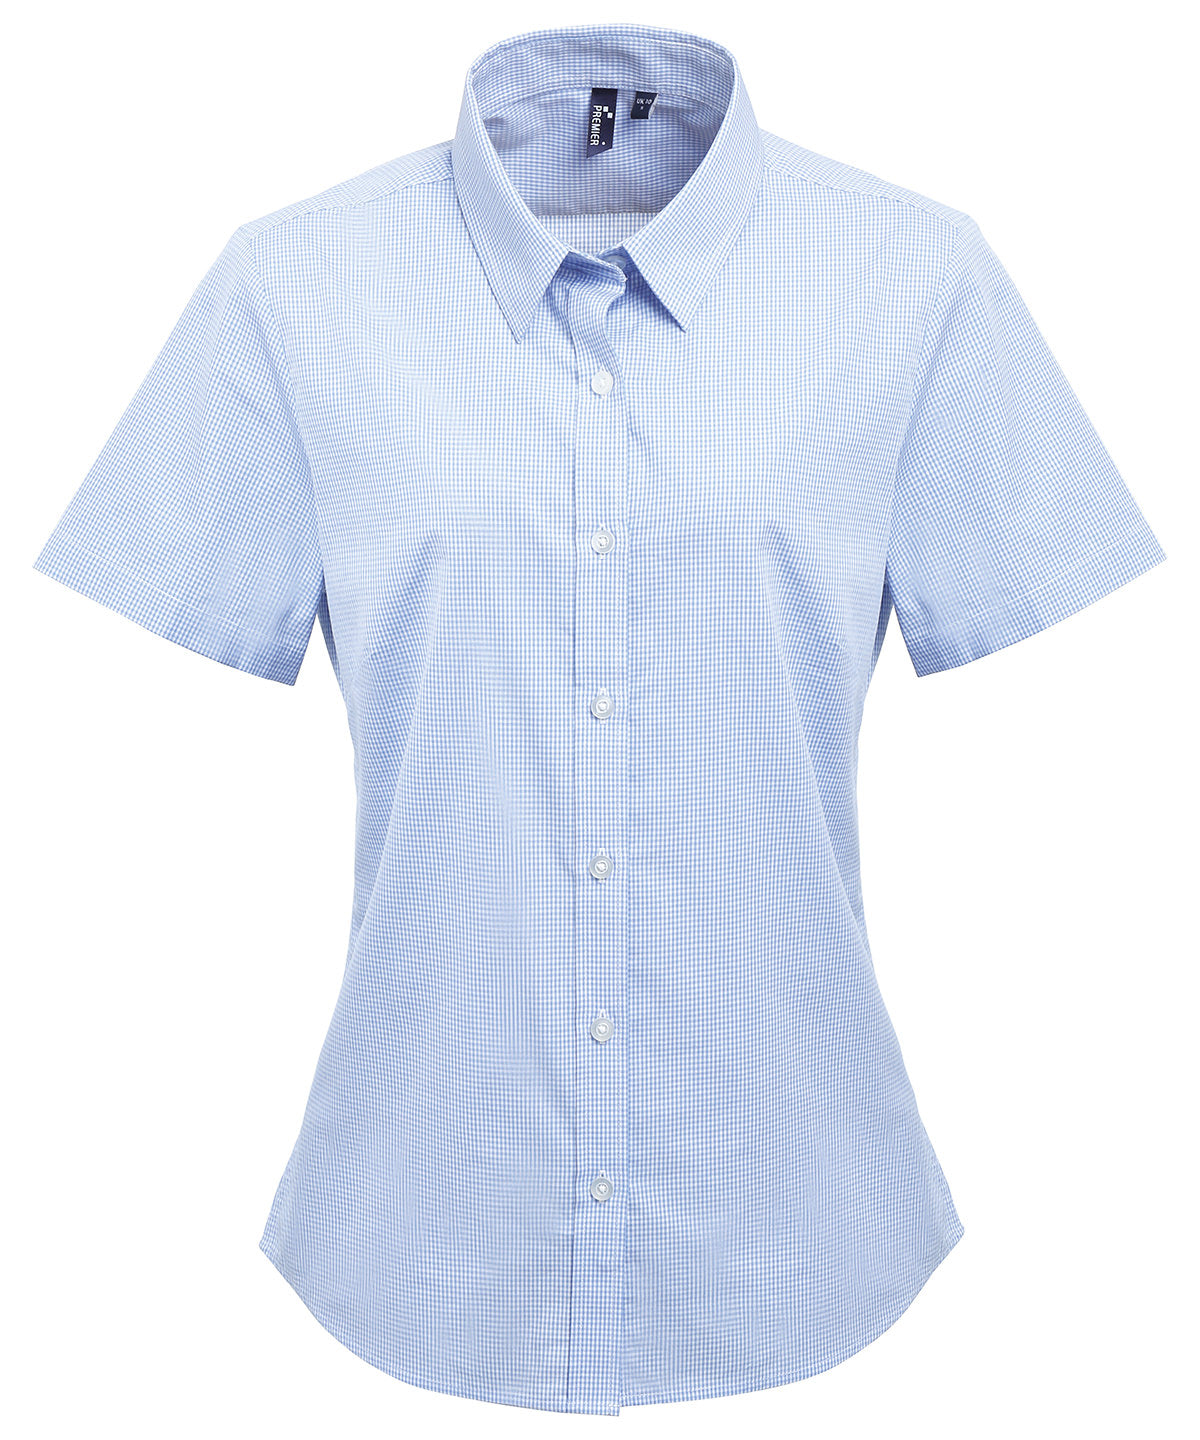 Women's Microcheck (Gingham) Short Sleeve Cotton Shirt